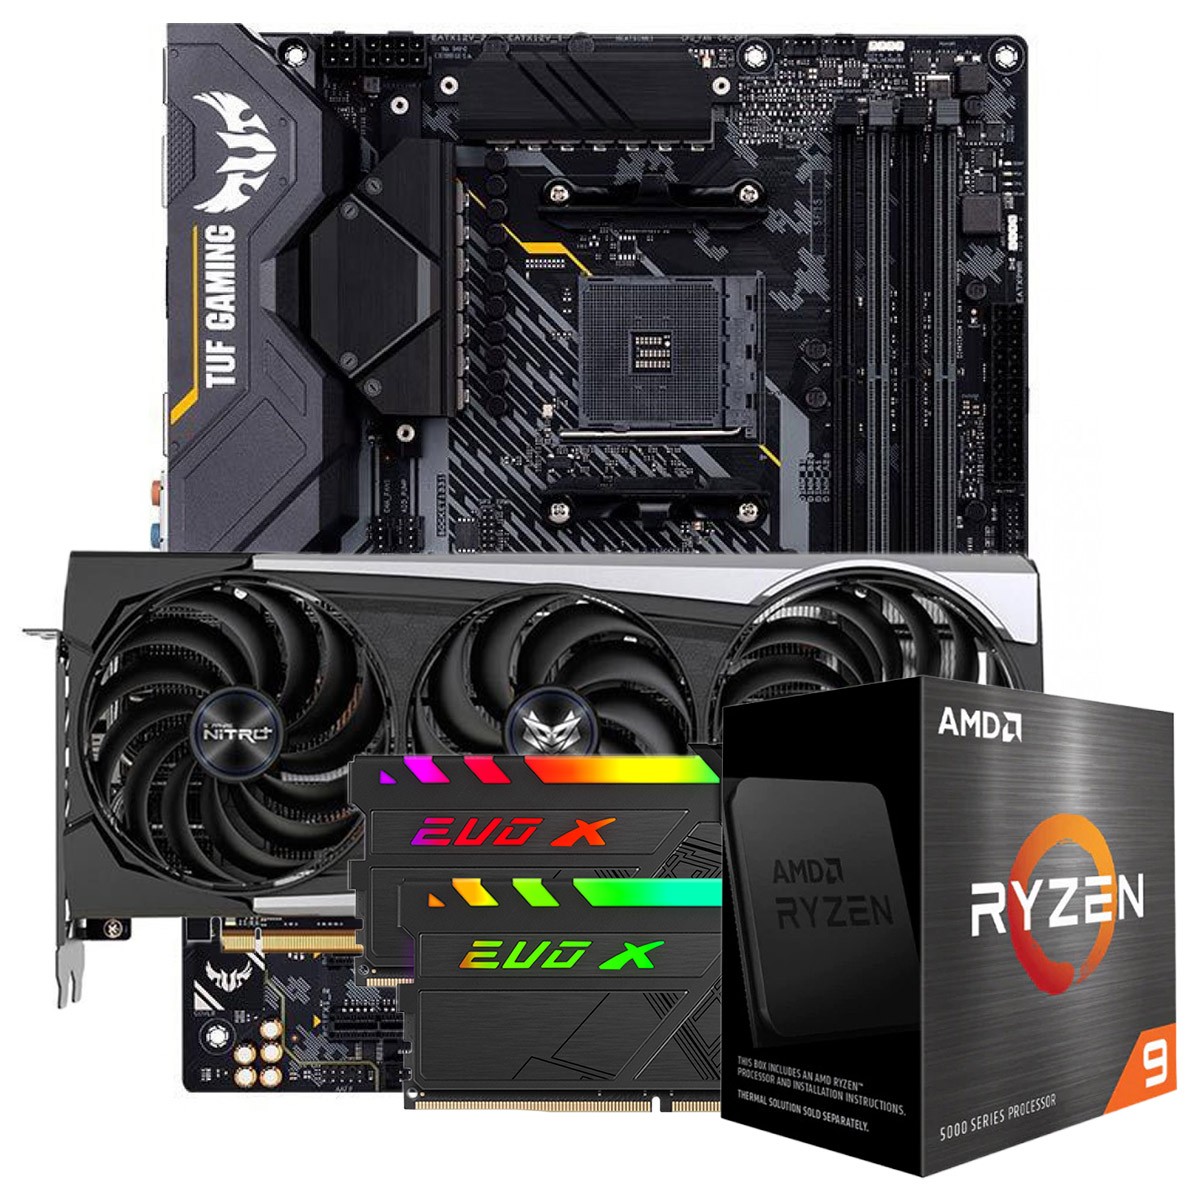 Kit Upgrade Sapphire Radeon RX 6700 XT + AMD Ryzen 9 5950X + ASUS TUF Gaming X570-Plus + Memória DDR4 16GB (2x8GB) 3600MHz